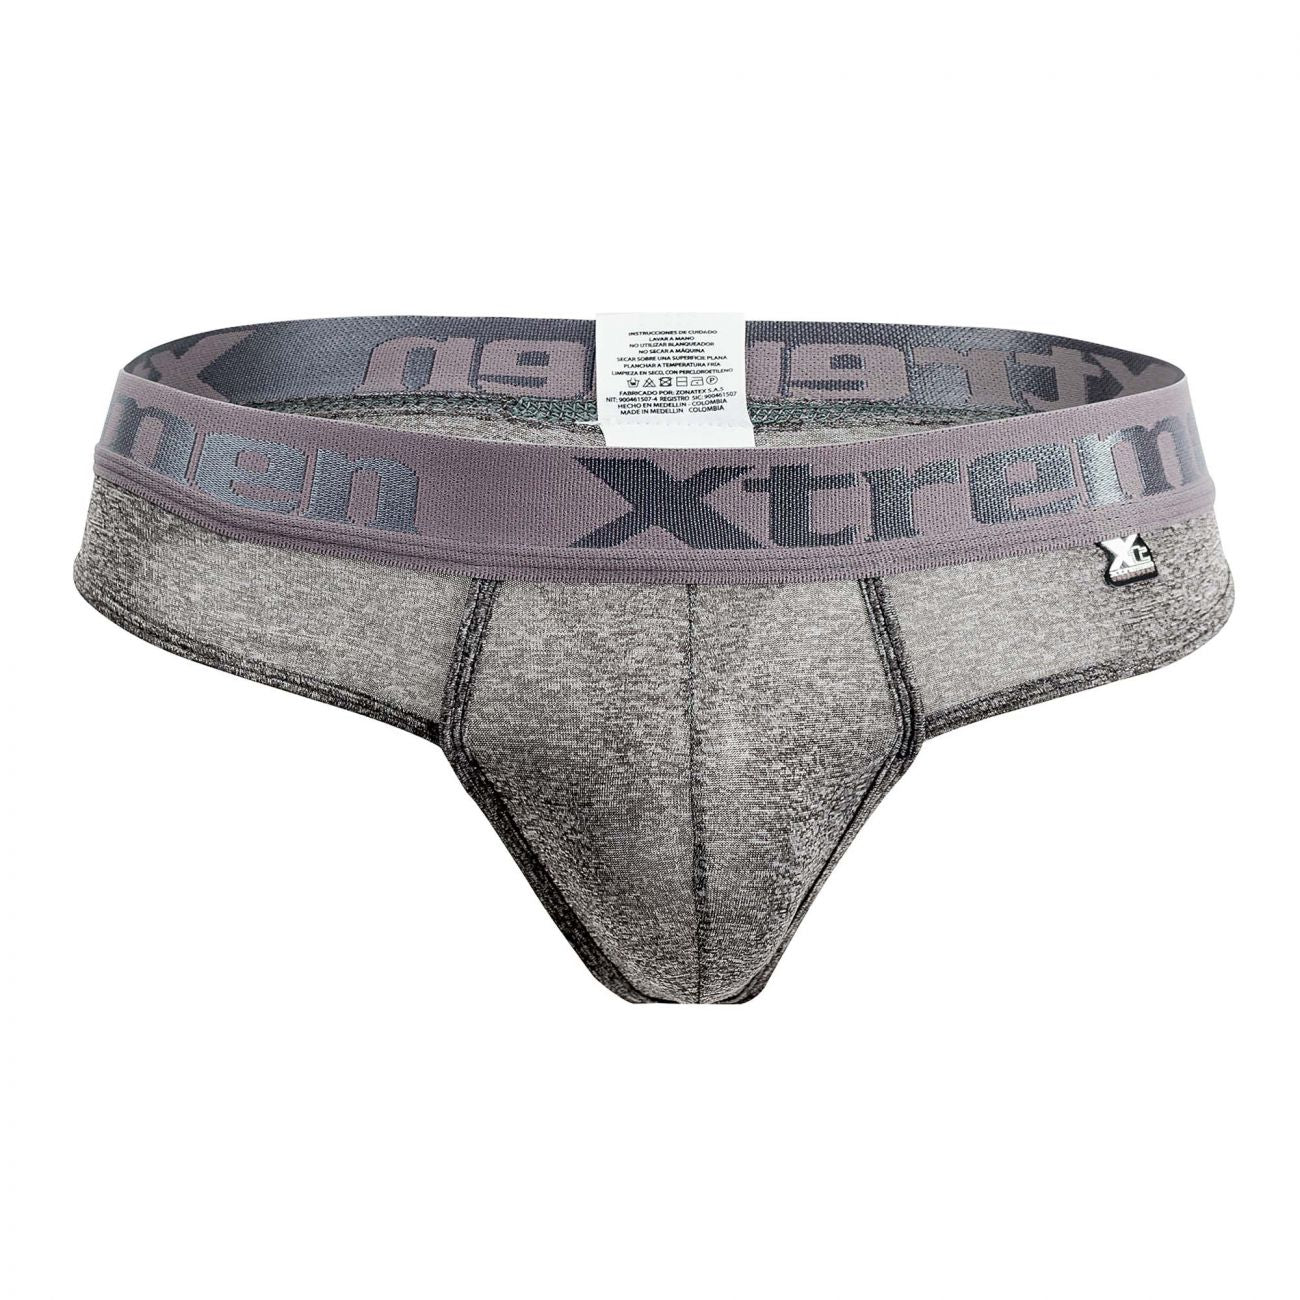 Xtremen 91031-3 3PK Piping Thongs